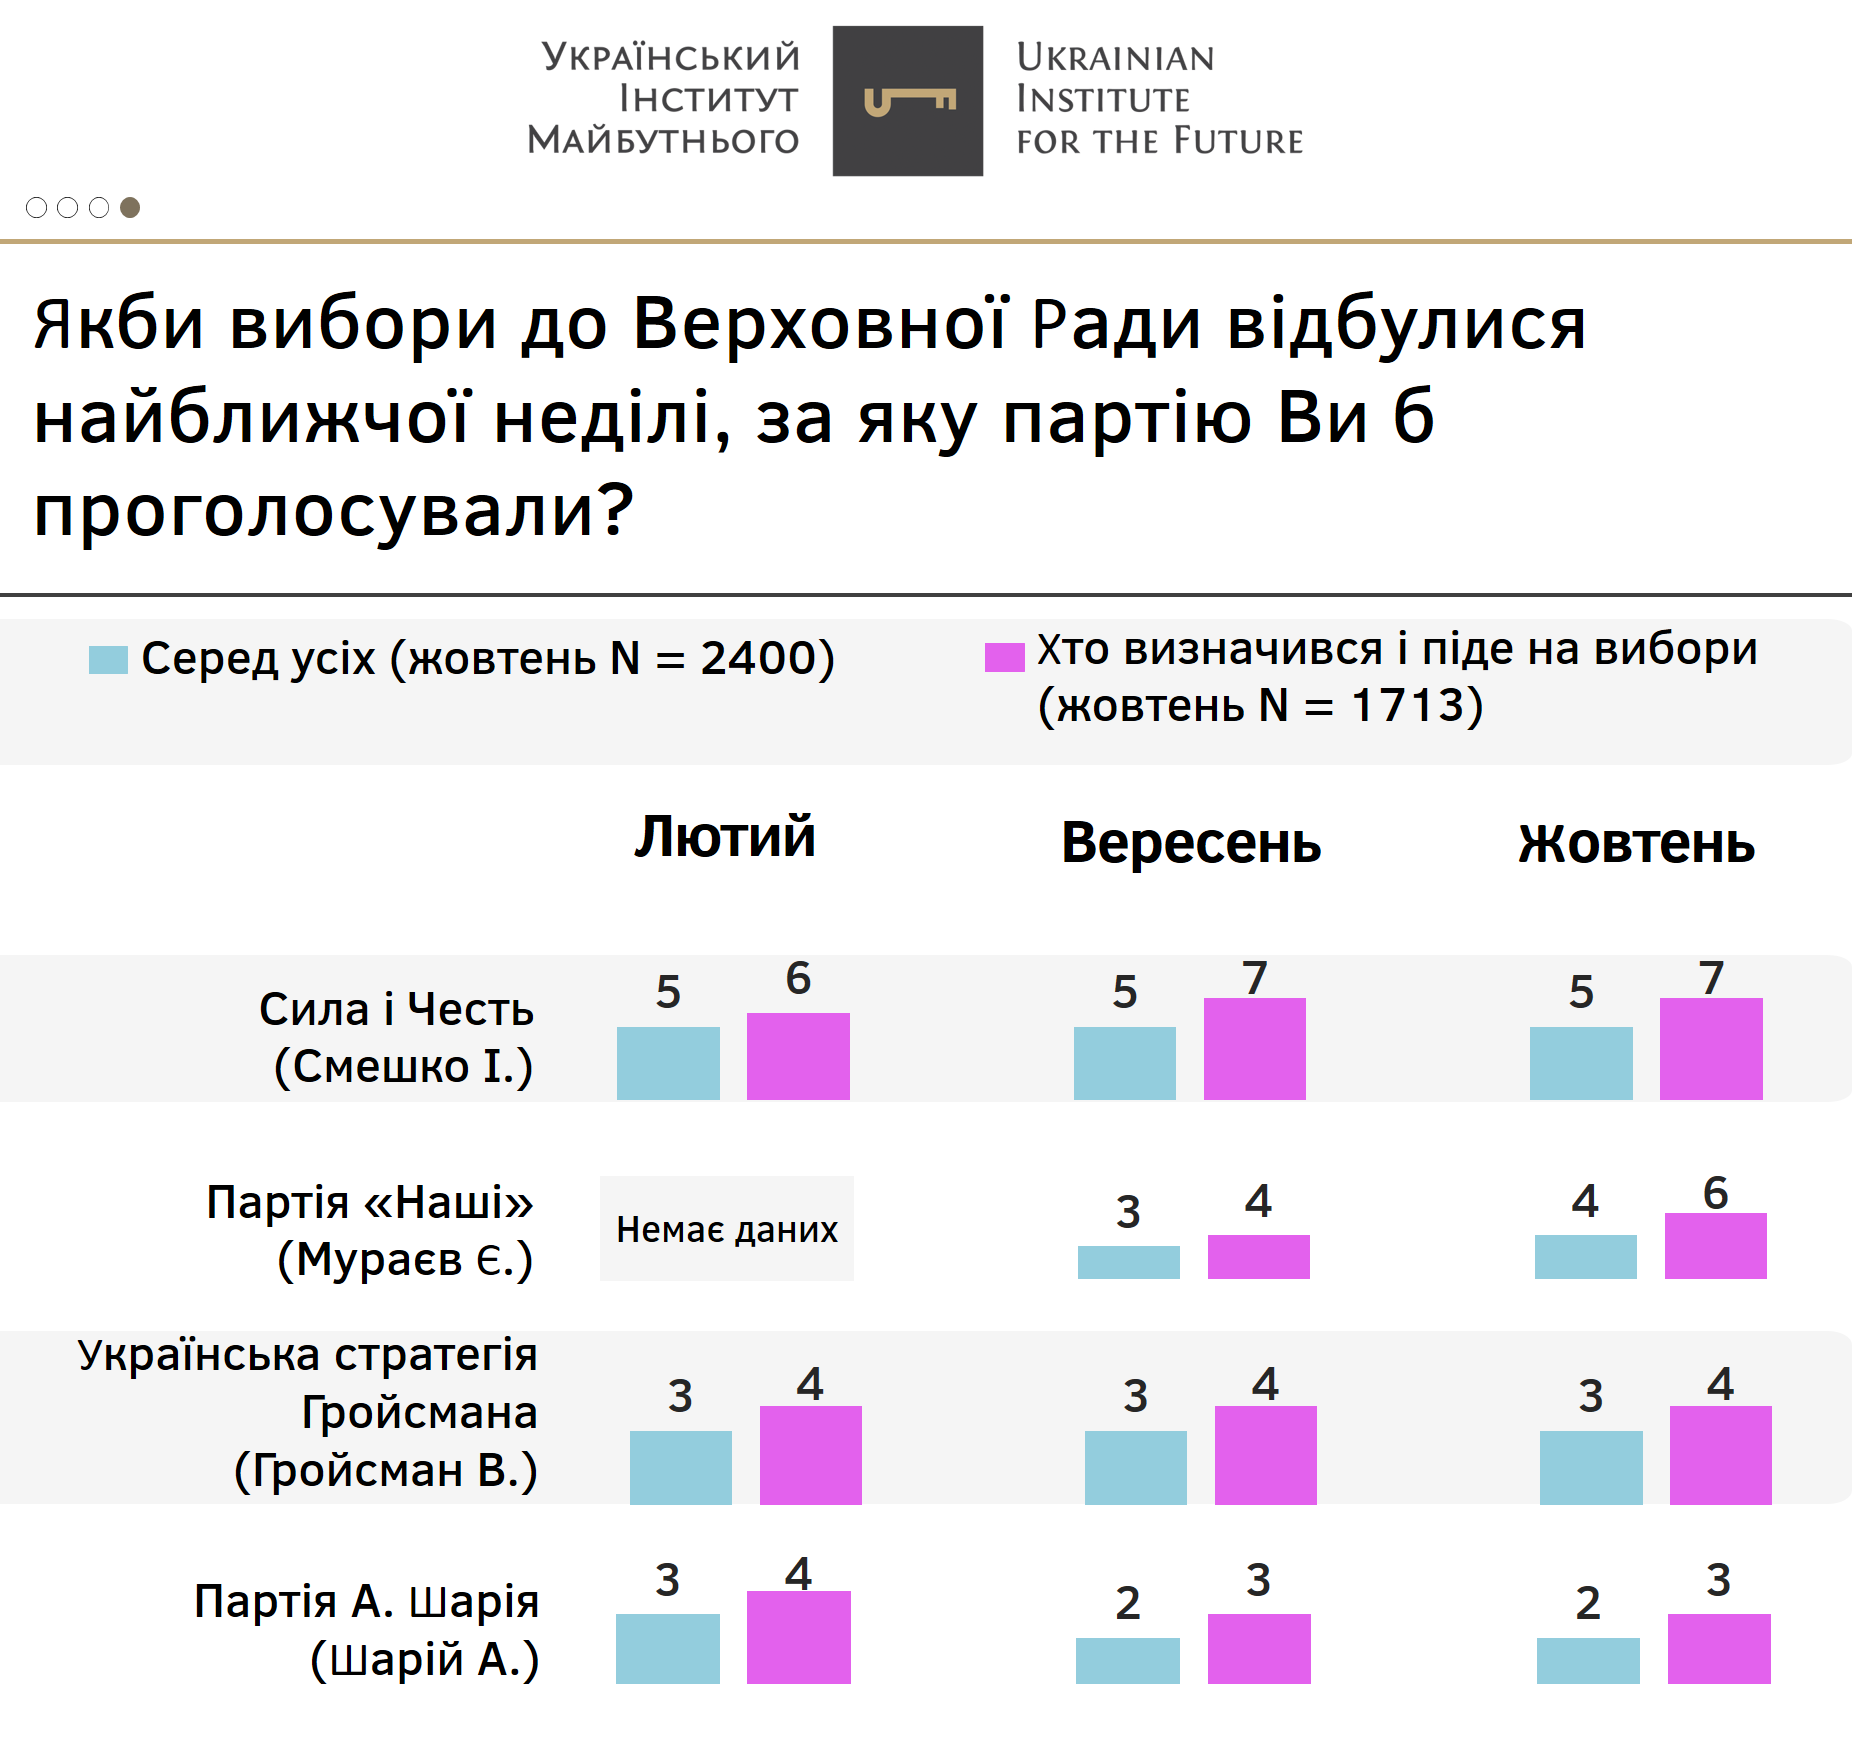 Рейтинг партий в октябре. Скриншот: Украинский институт будущего